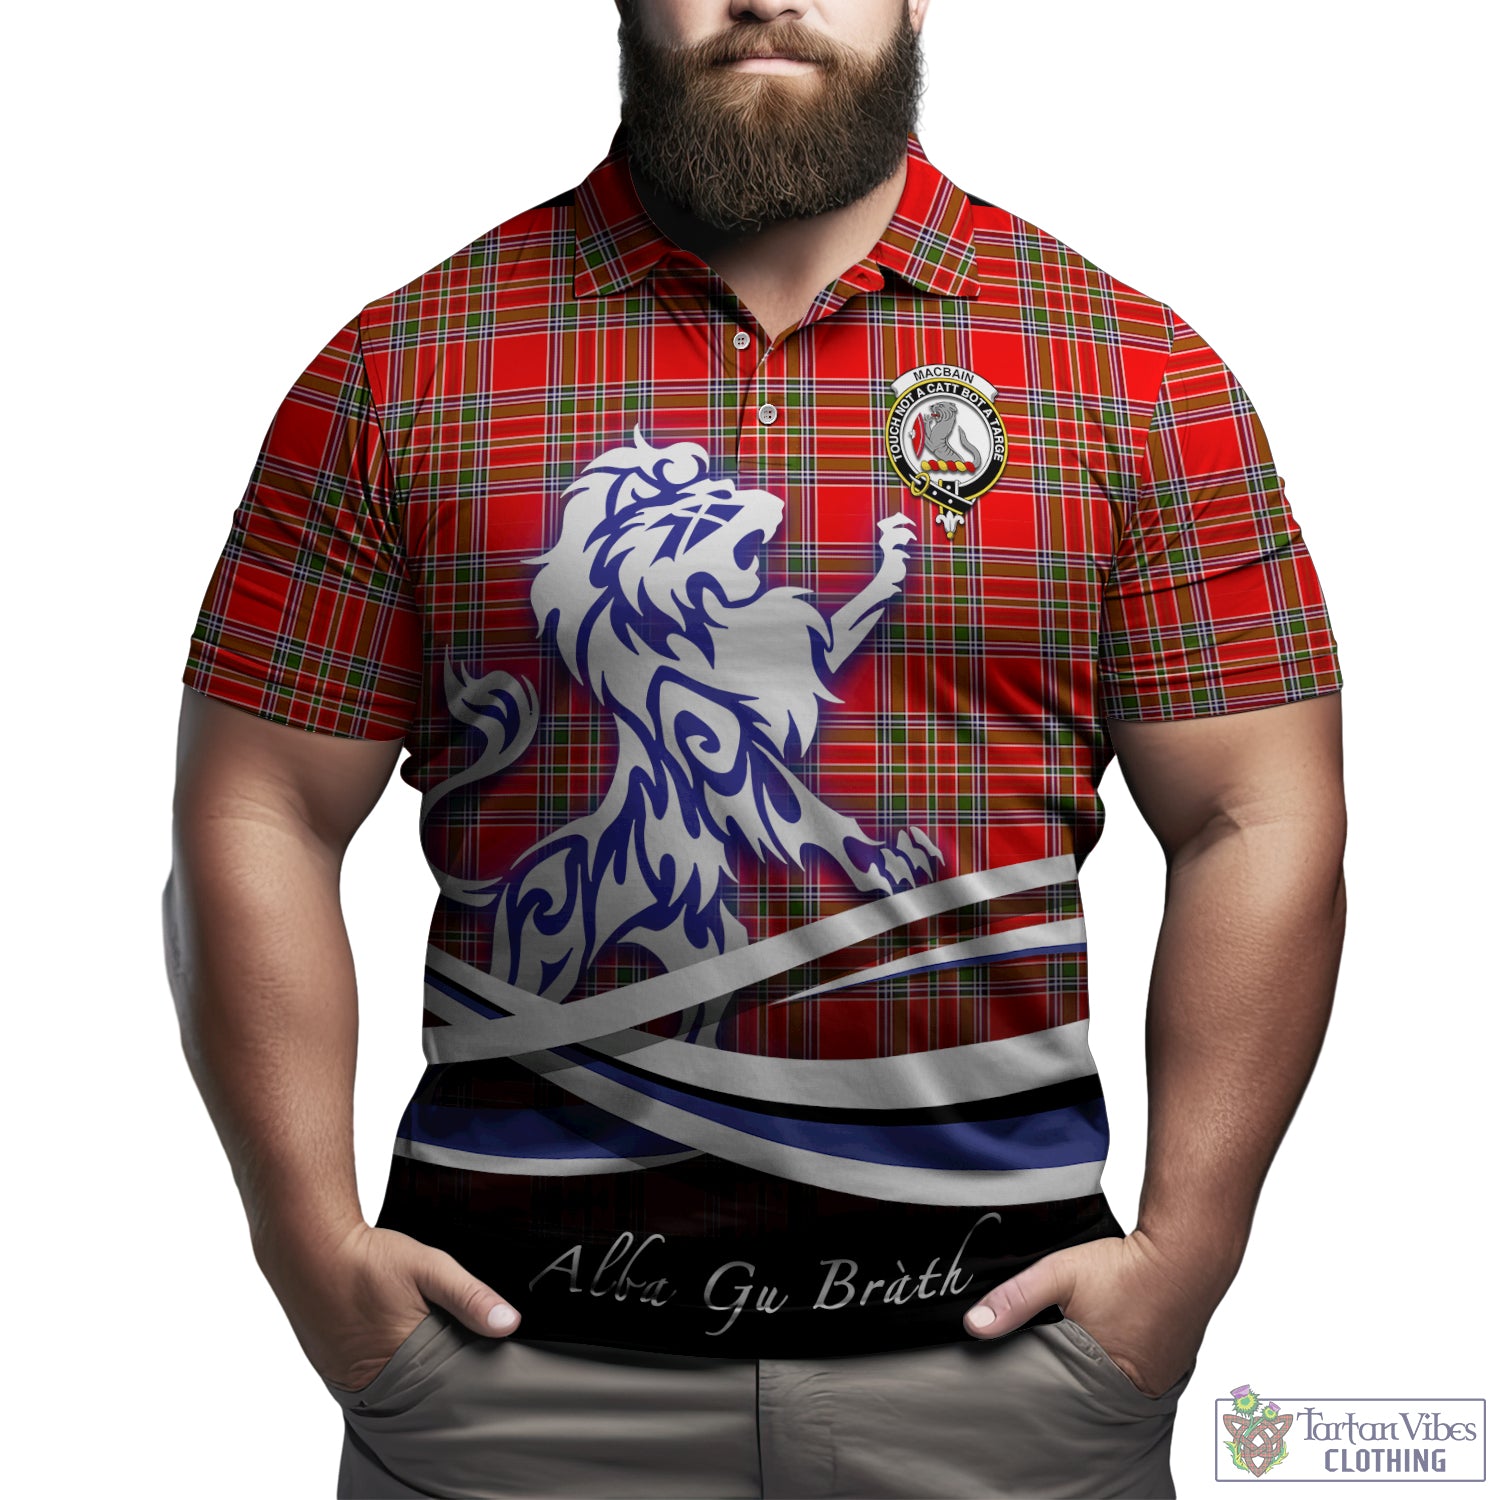 macbain-tartan-polo-shirt-with-alba-gu-brath-regal-lion-emblem